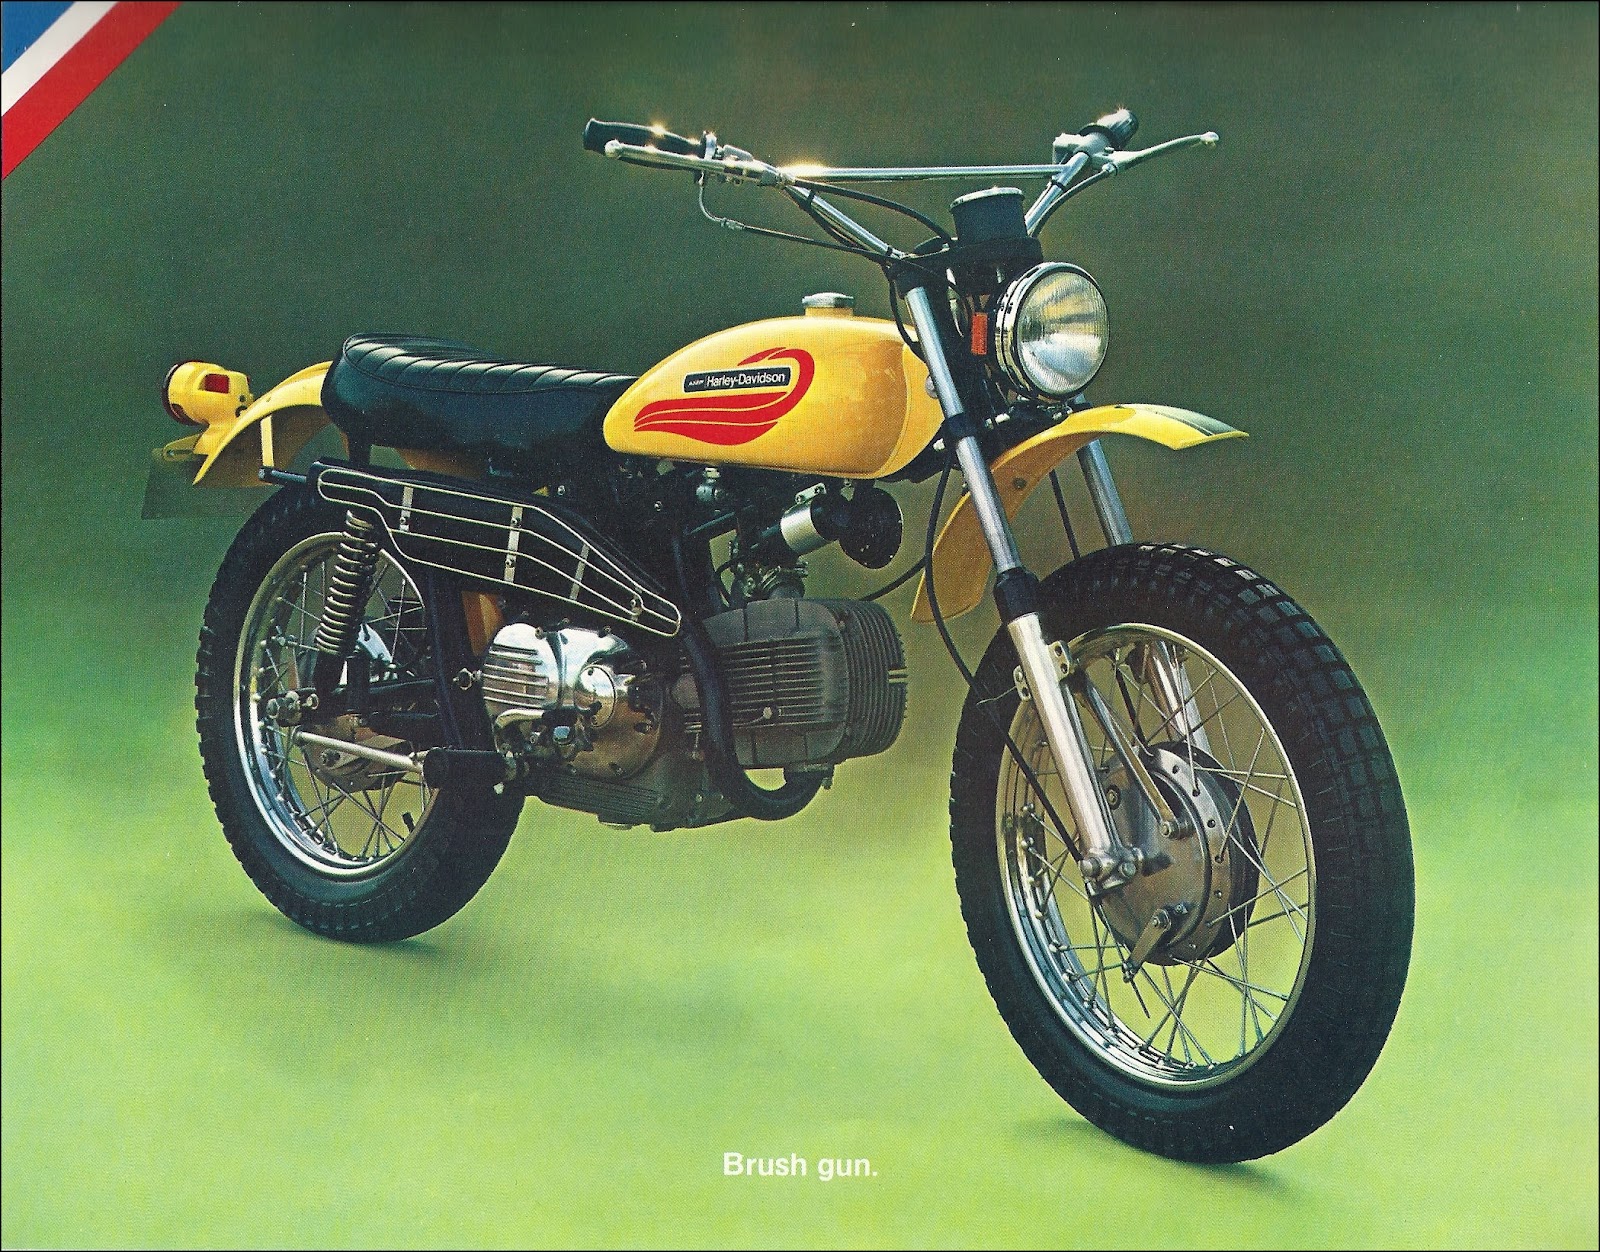 1972 - Harley-Davidson - Folletos